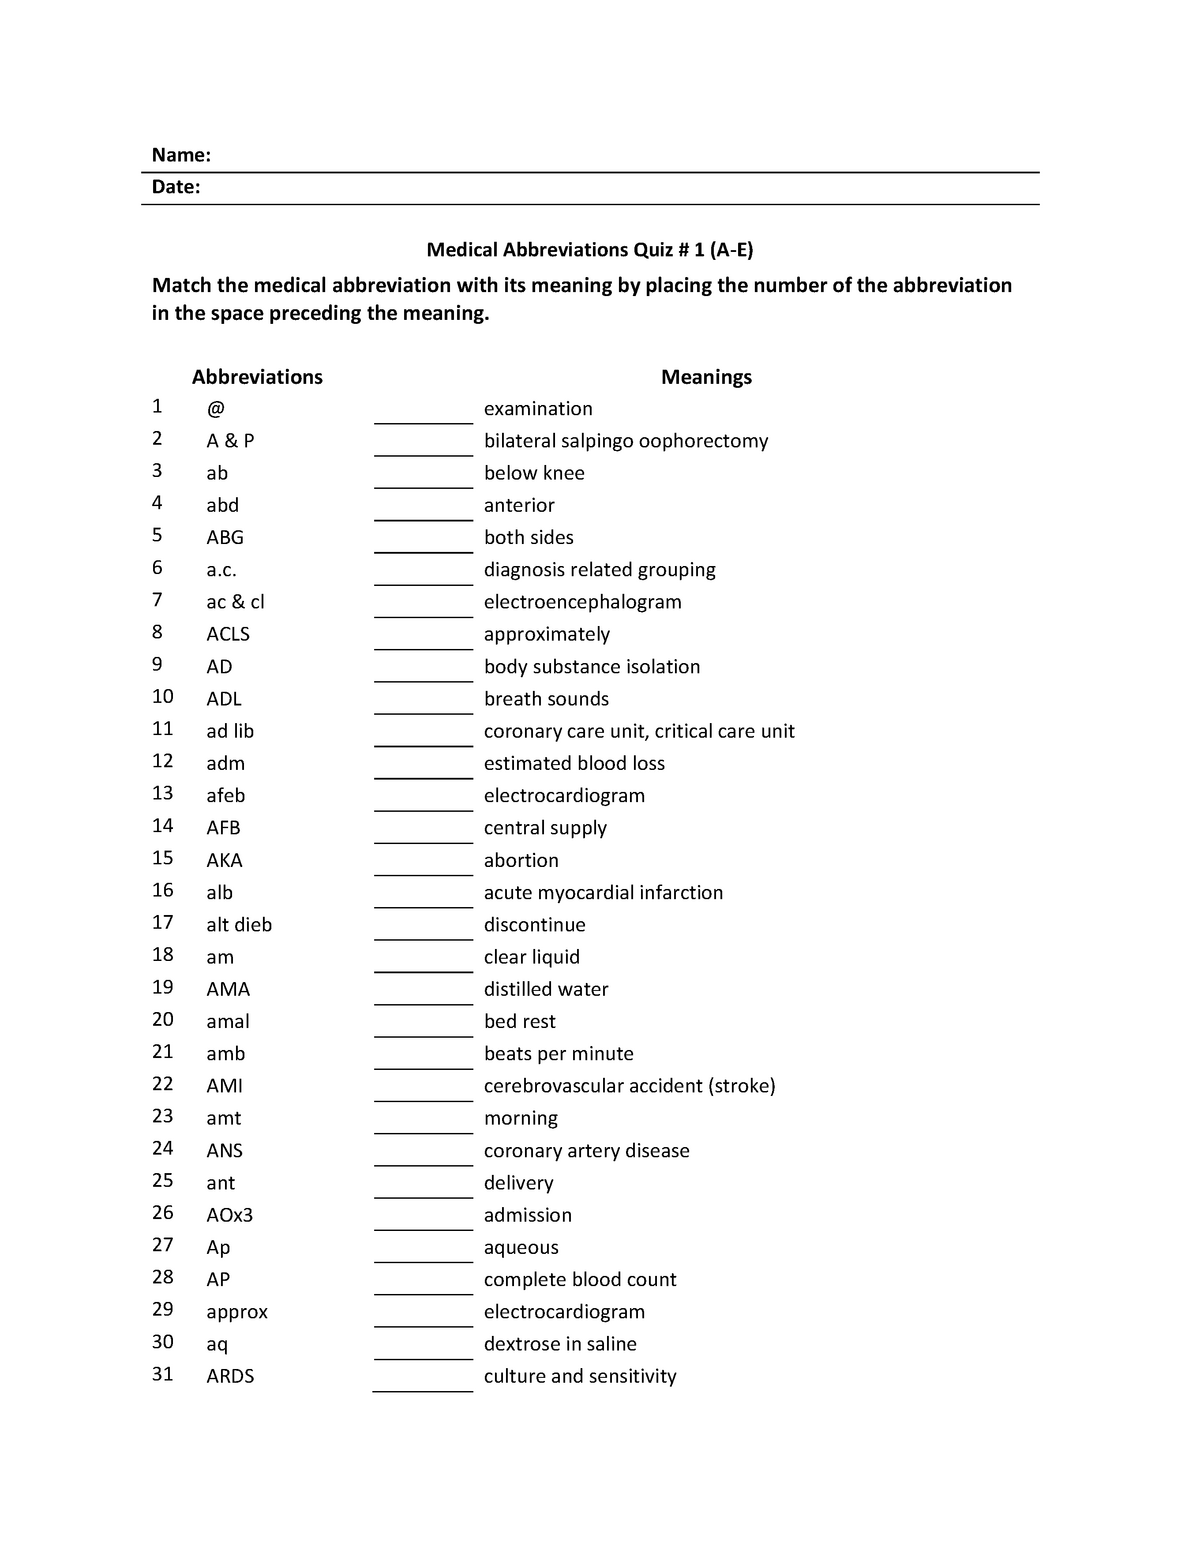 Medical Abbreviations Quiz # 11 A-E - HIM11 - MDC - StuDocu Within Medical Terminology Abbreviations Worksheet